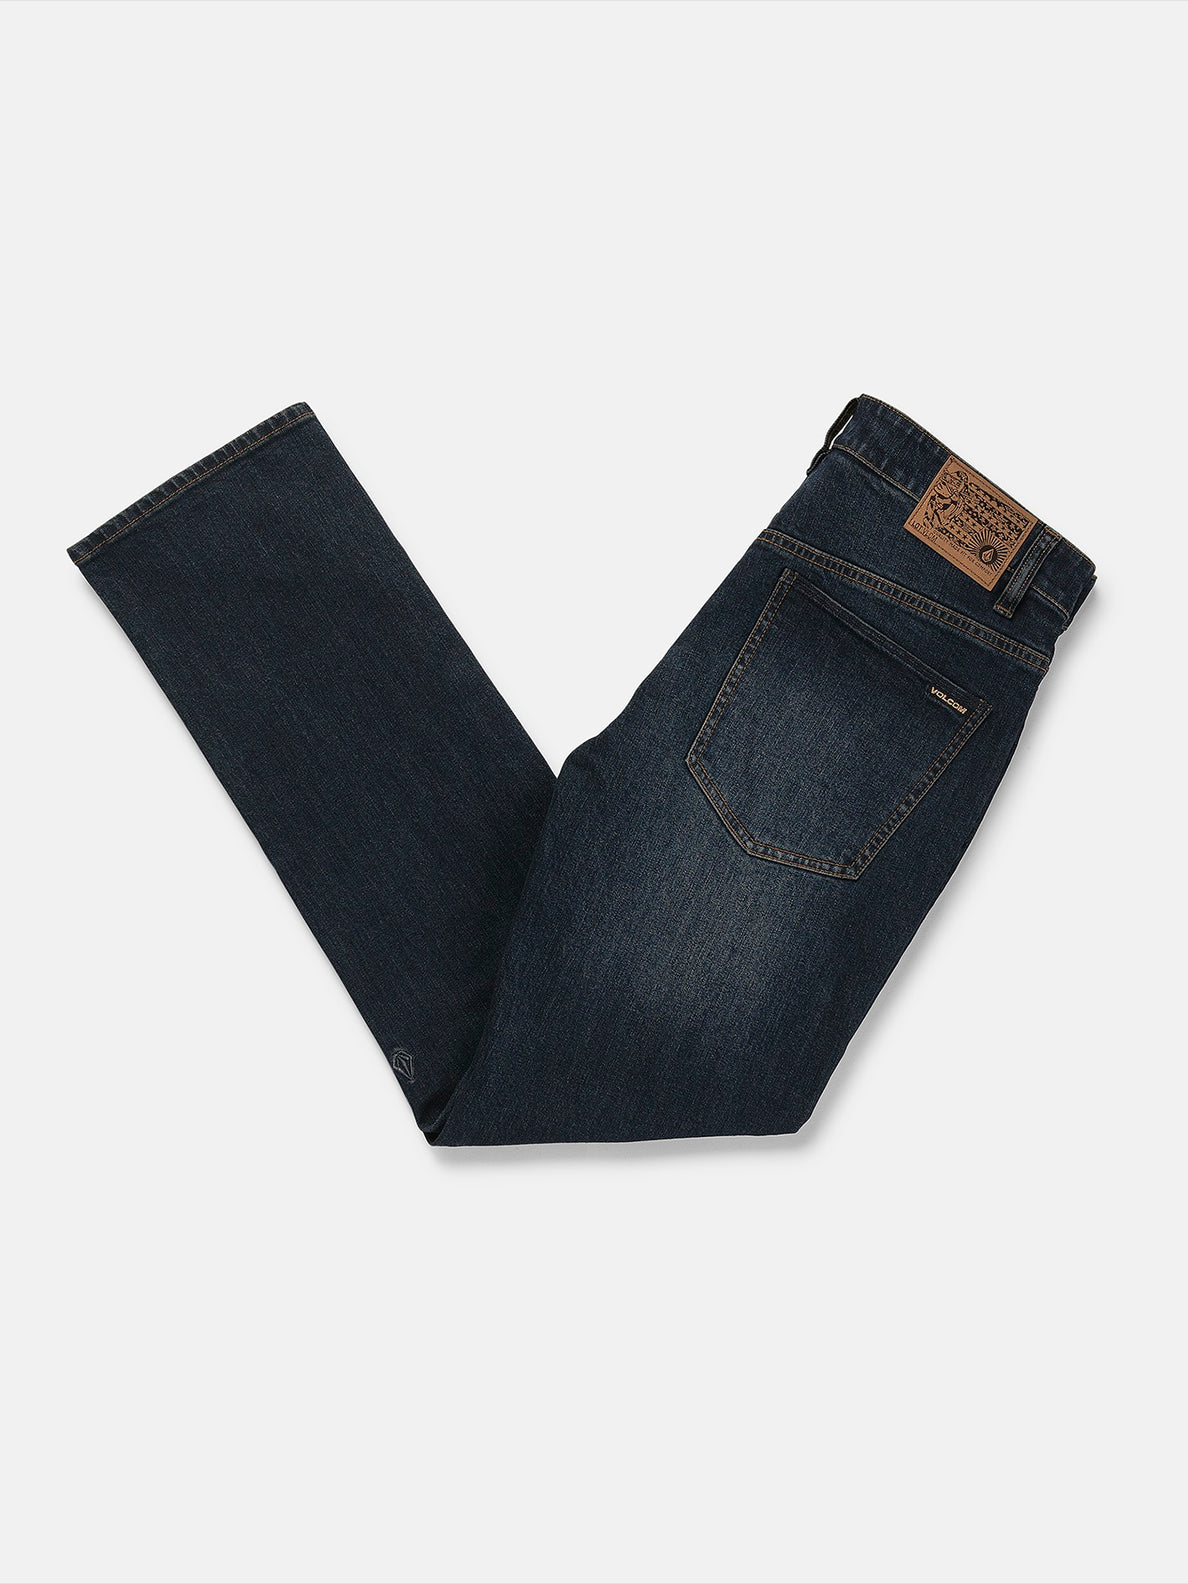 Solver Modern Fit Jeans - New Vintage Black